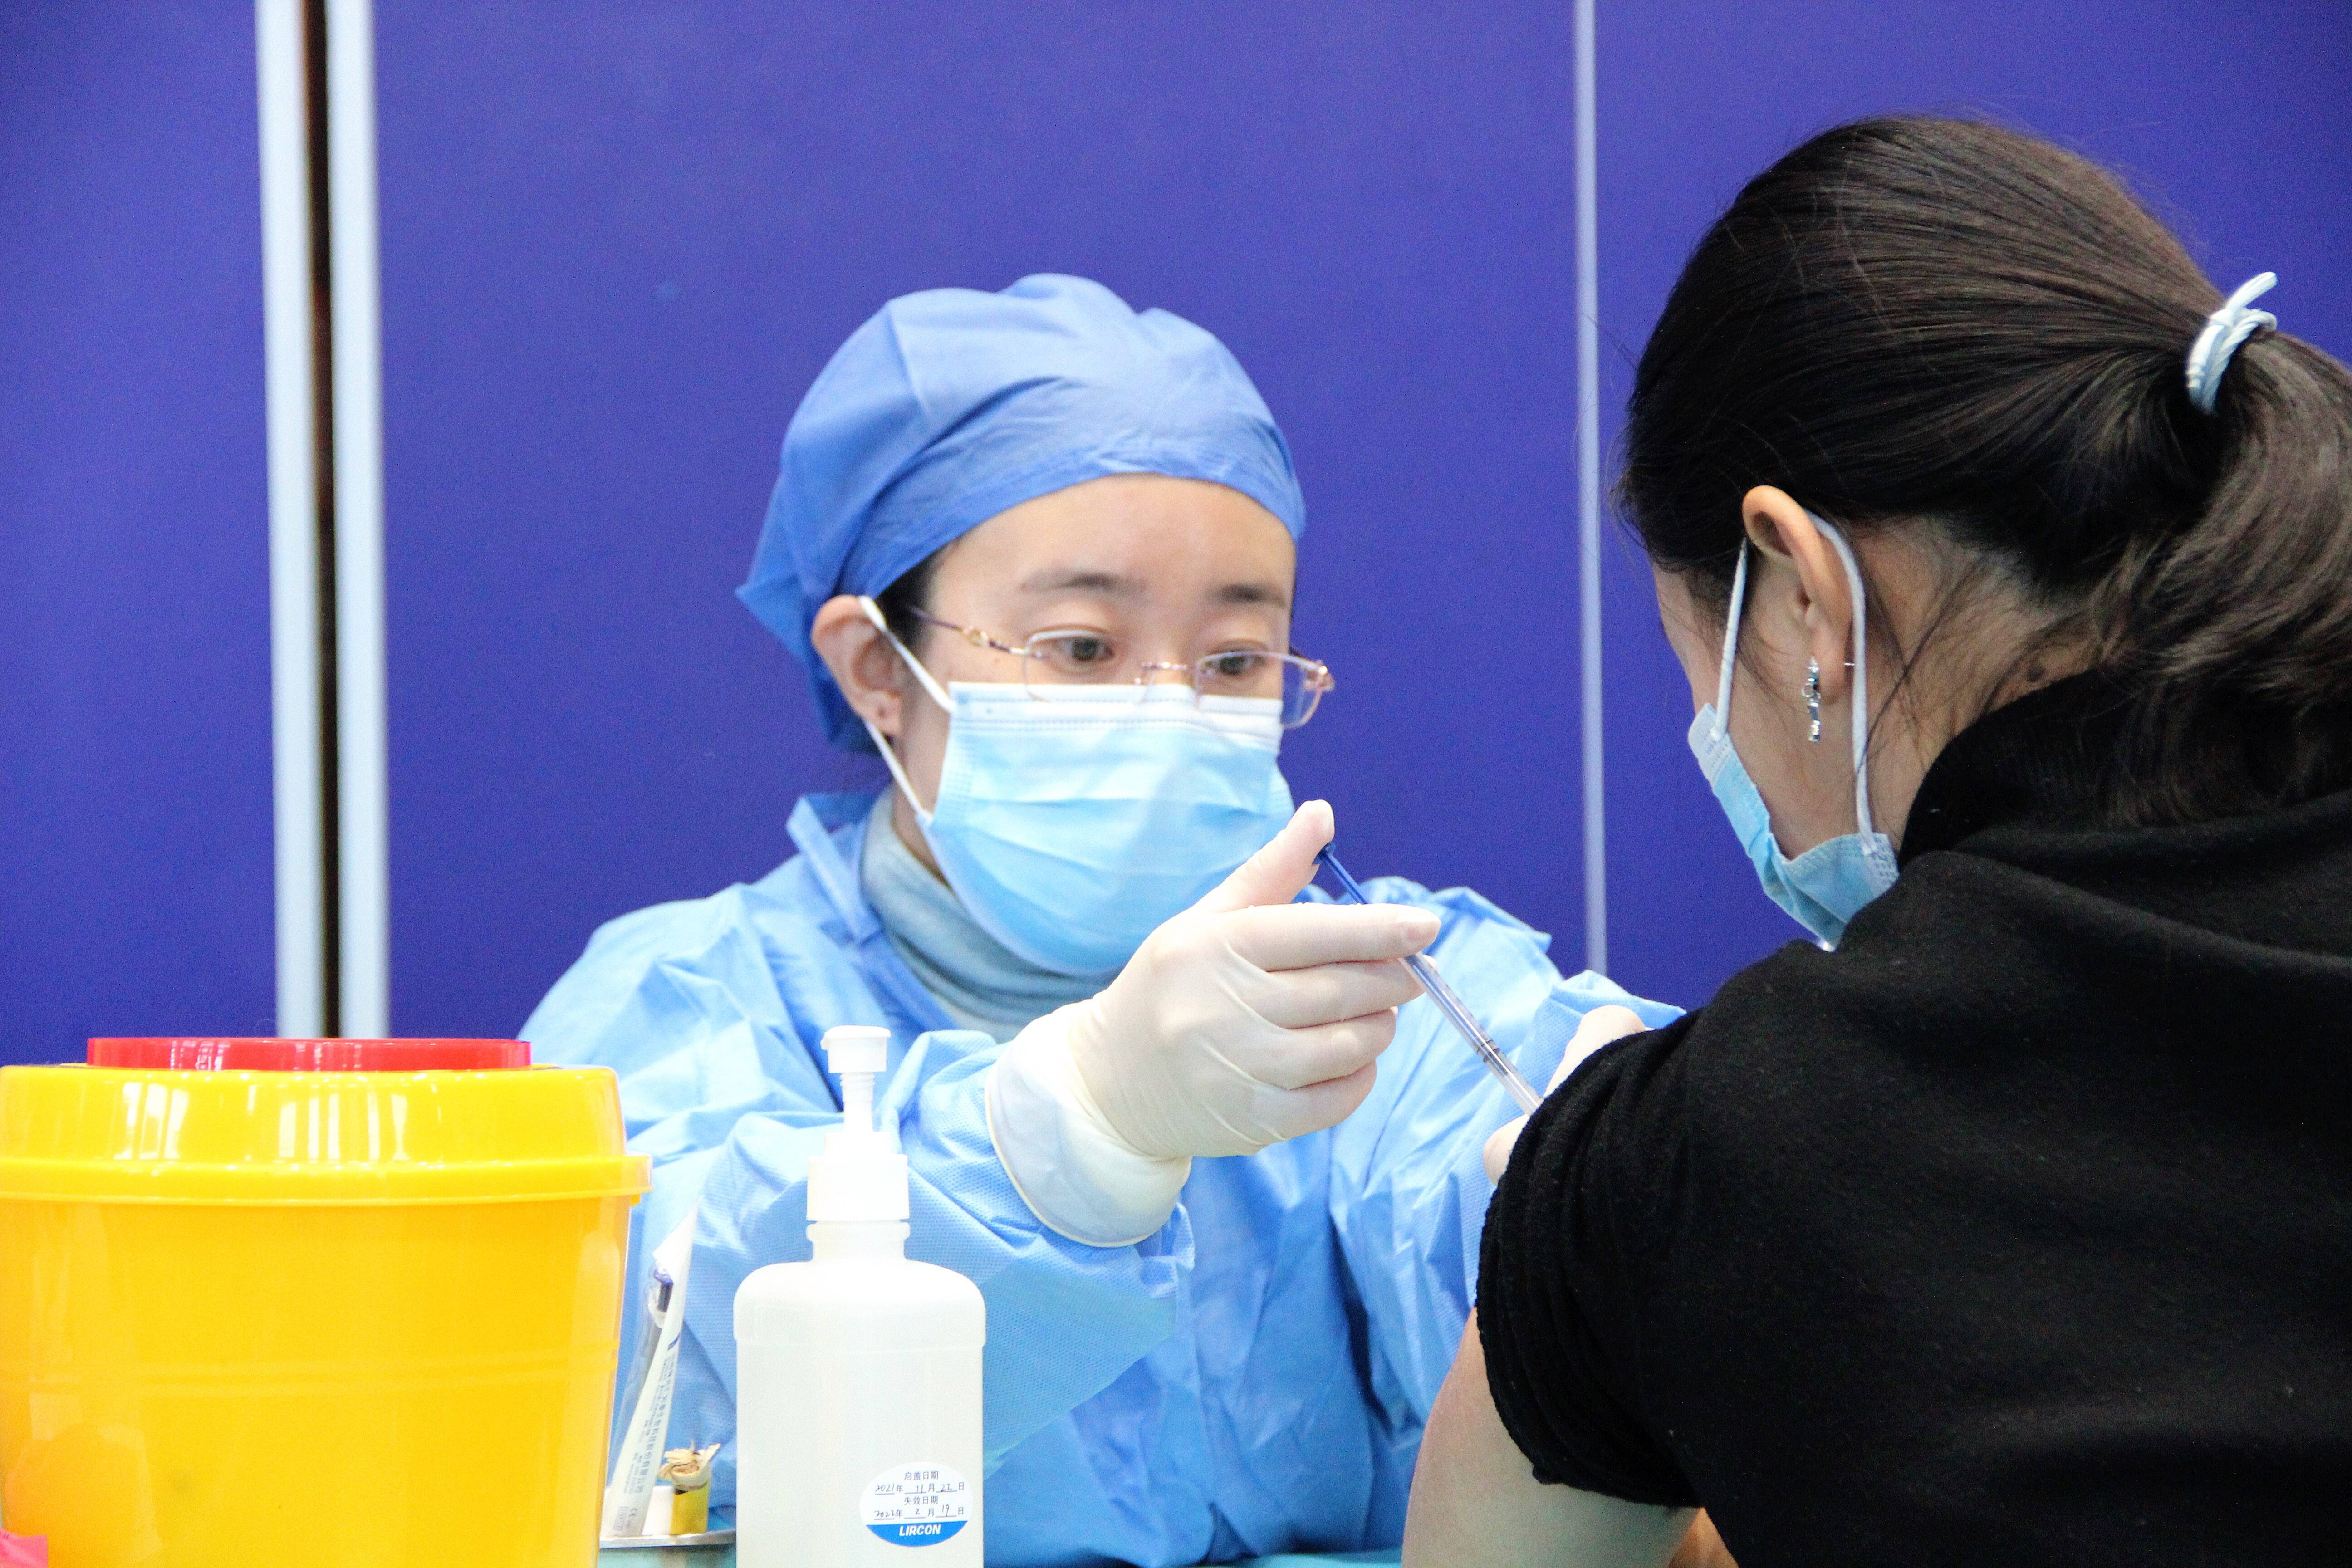 师生正在有序的进行新冠病毒加强针疫苗的接种。记者 陈蔚 报道